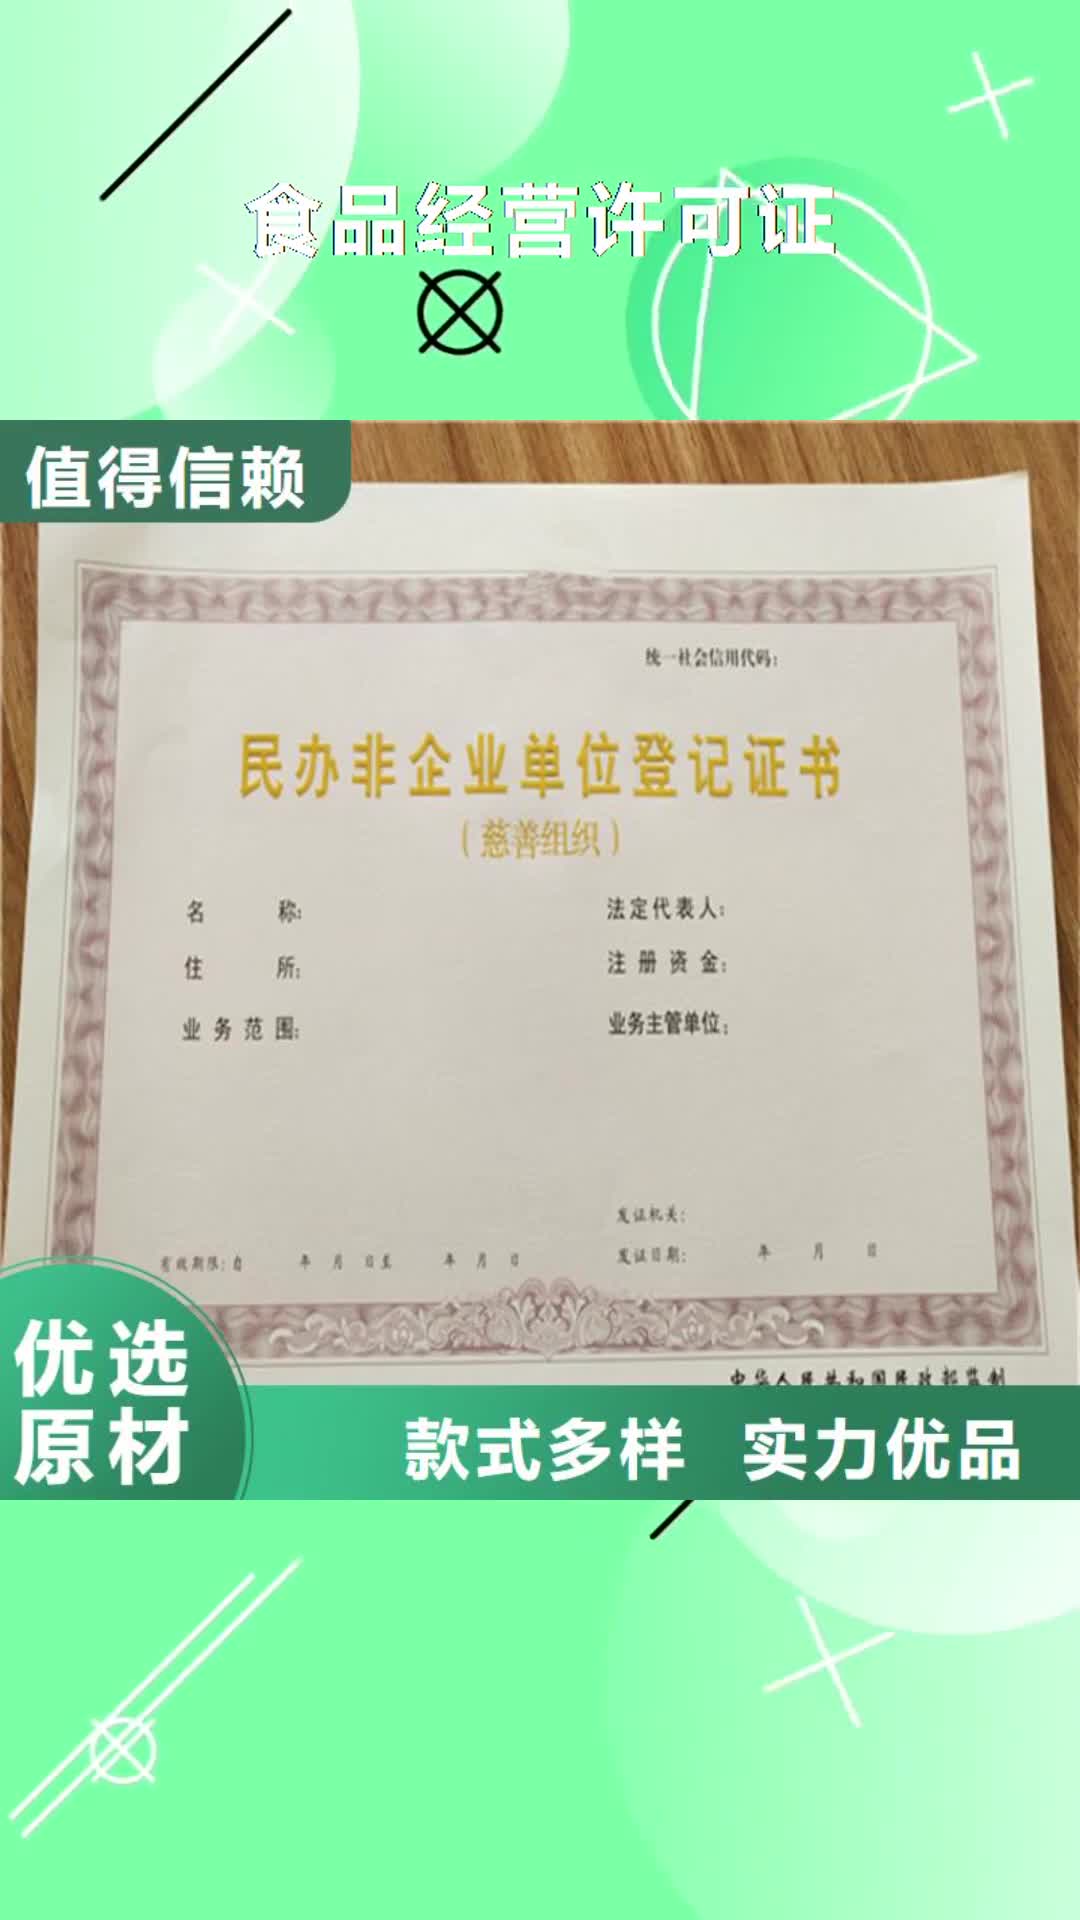 朝阳【食品经营许可证】,新版营业执照印刷厂设计制作产品细节